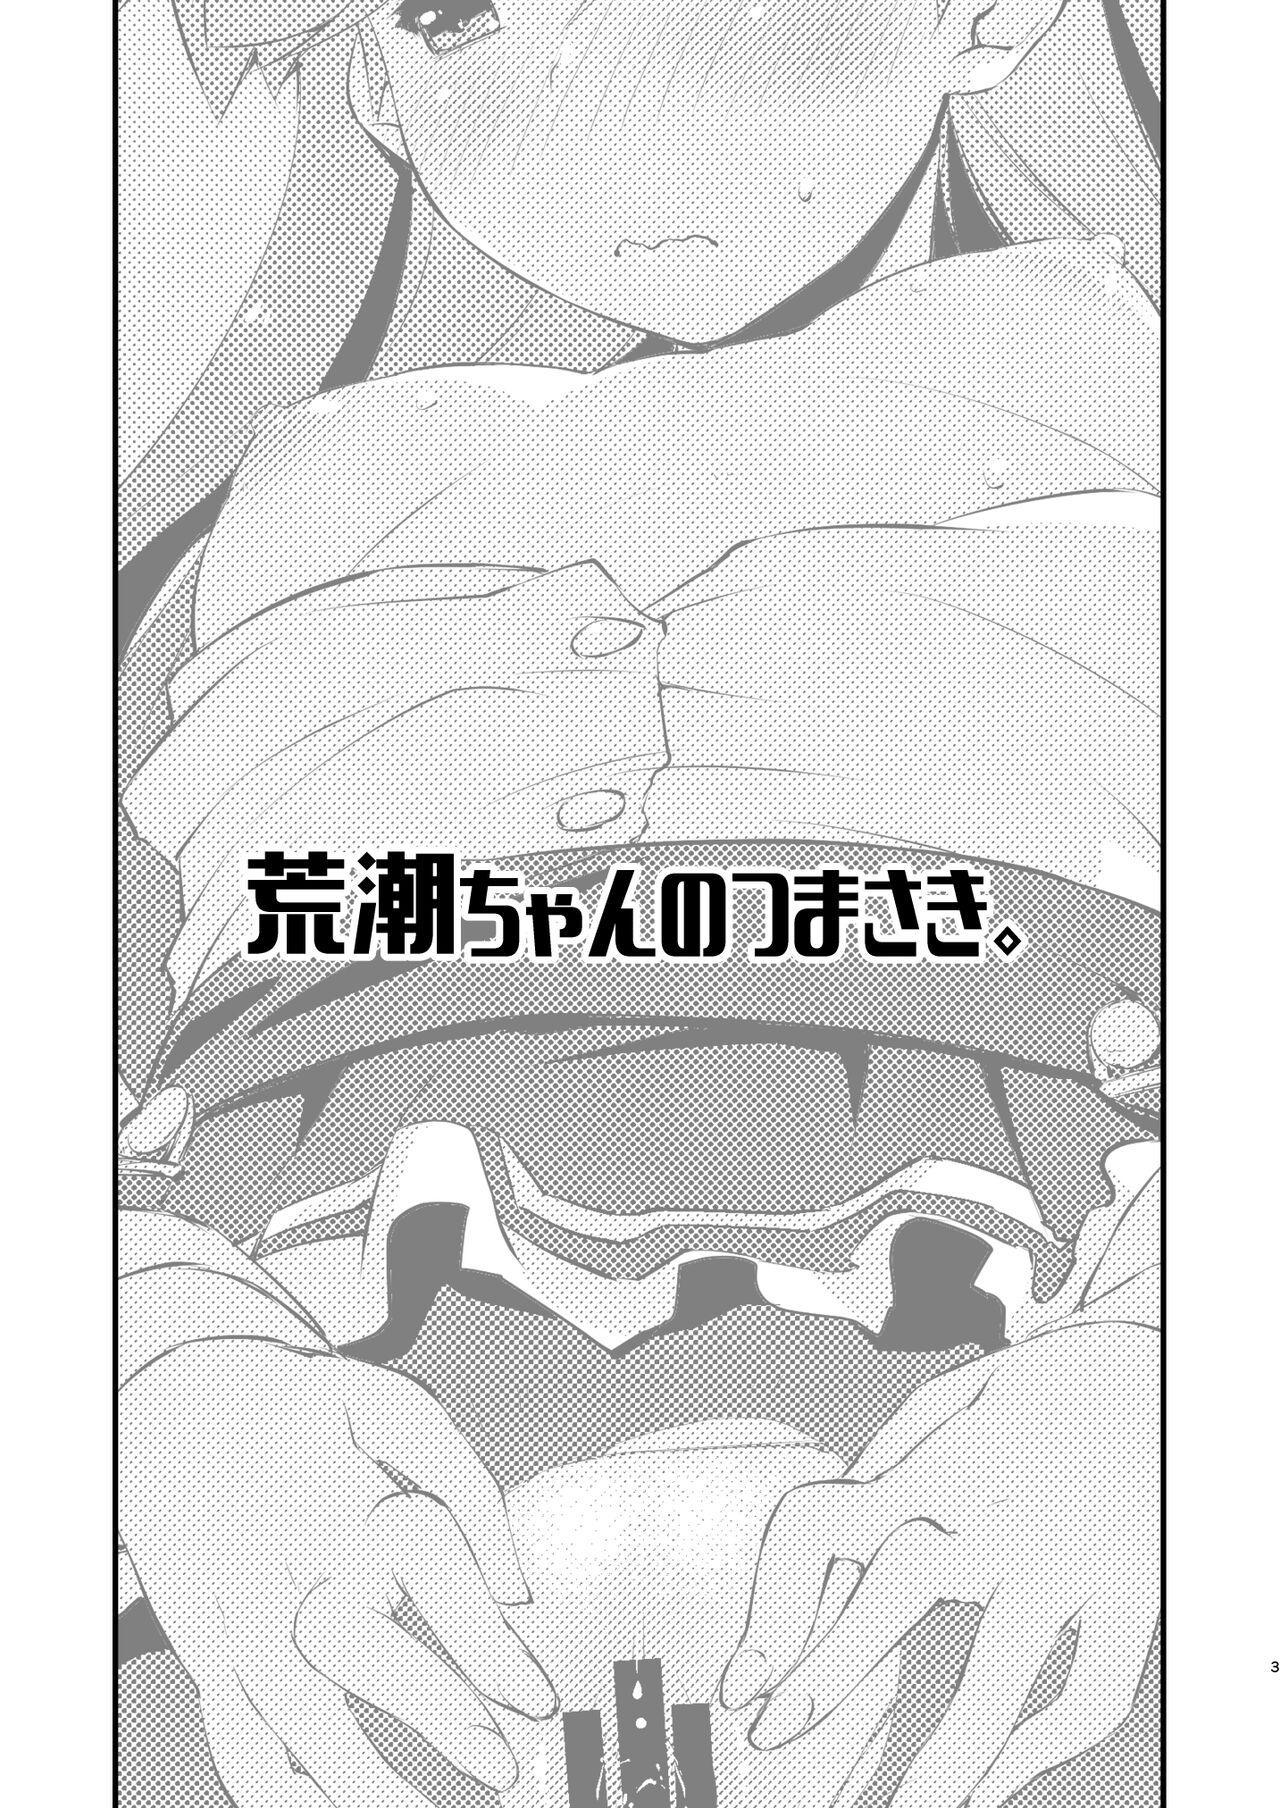 Dicks Arashio-chan no Tsumasaki. - Kantai collection Tia - Page 3